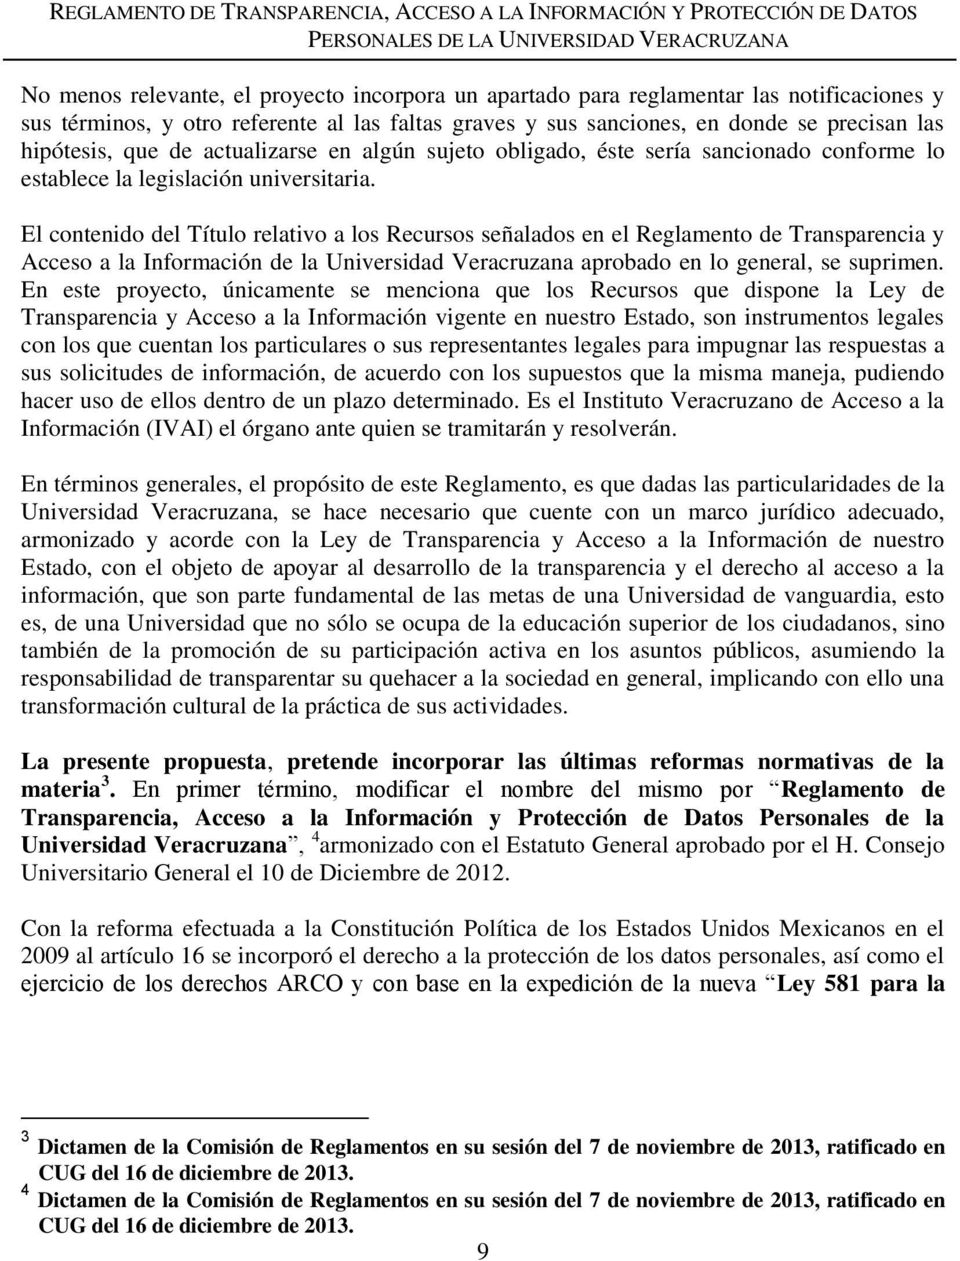 El contenido del Título relativo a los Recursos señalados en el Reglamento de Transparencia y Acceso a la Información de la Universidad Veracruzana aprobado en lo general, se suprimen.